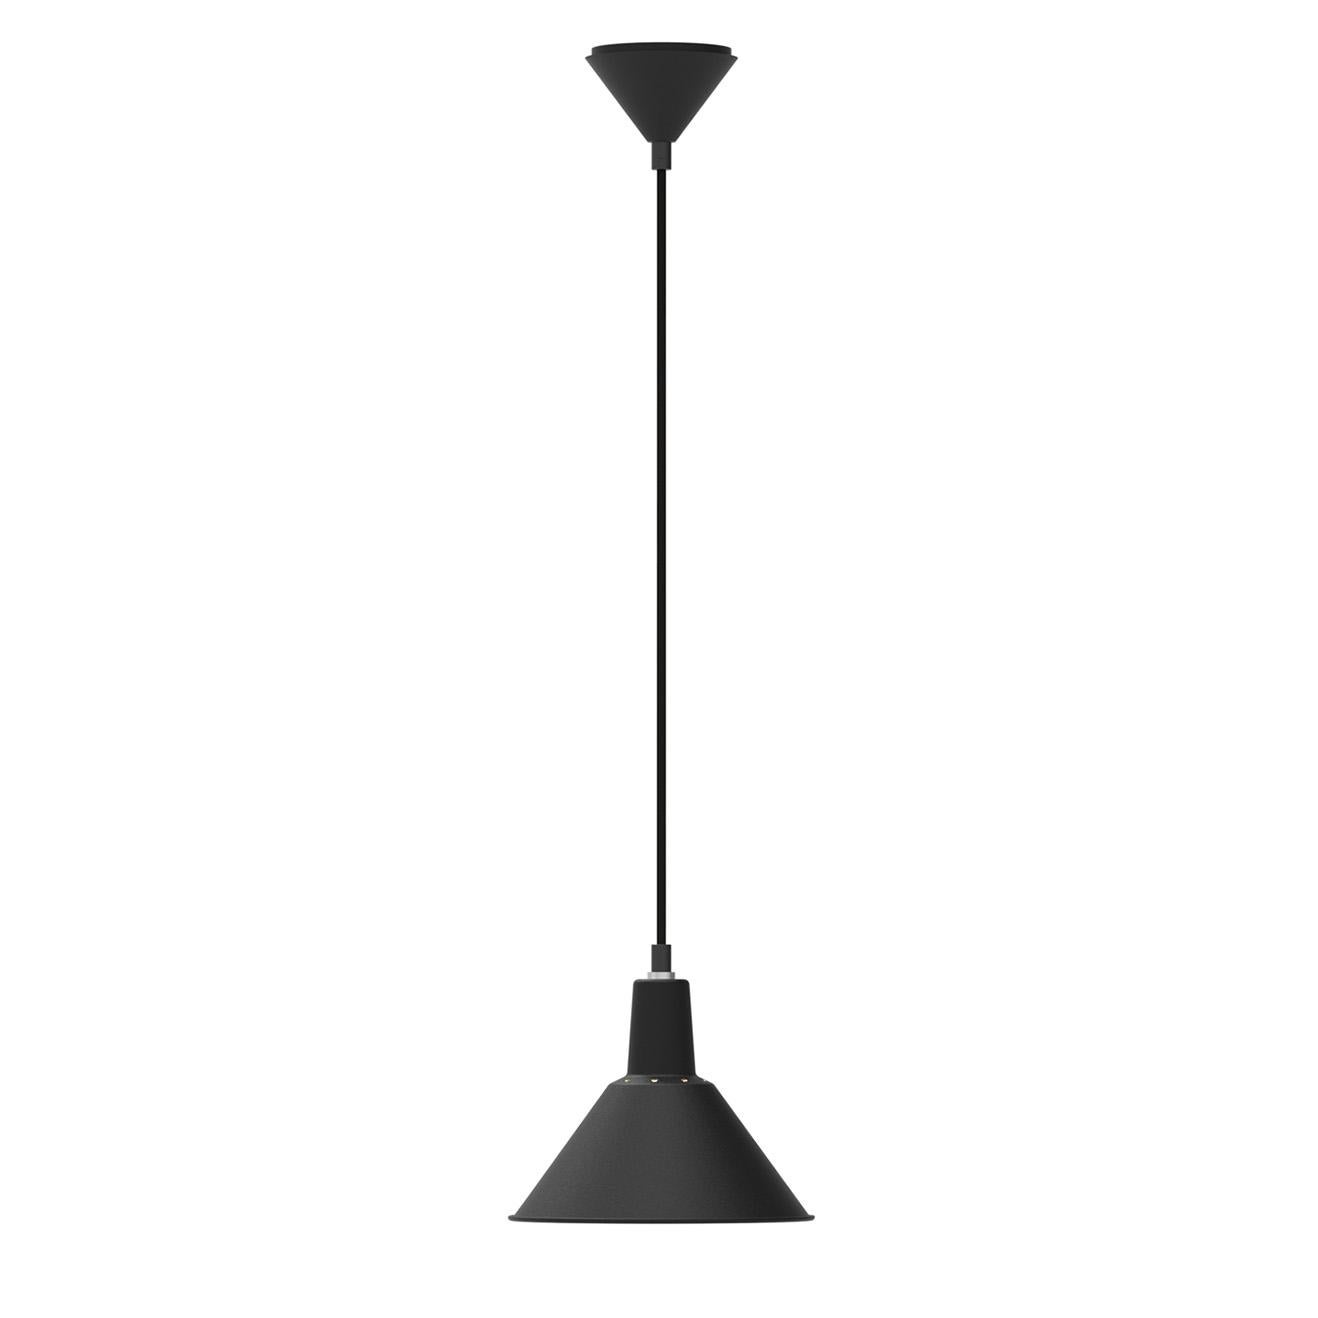 Arcon Lamp Series ist eine architektonische Umsetzung zwischen Funktion und Proportion. Die Arcon Pendelleuchte war eine natürliche Erweiterung der Tisch- und Wandleuchte. Der kleine grafische Schirm ist ideal für kleine Räume, über Schränken, in